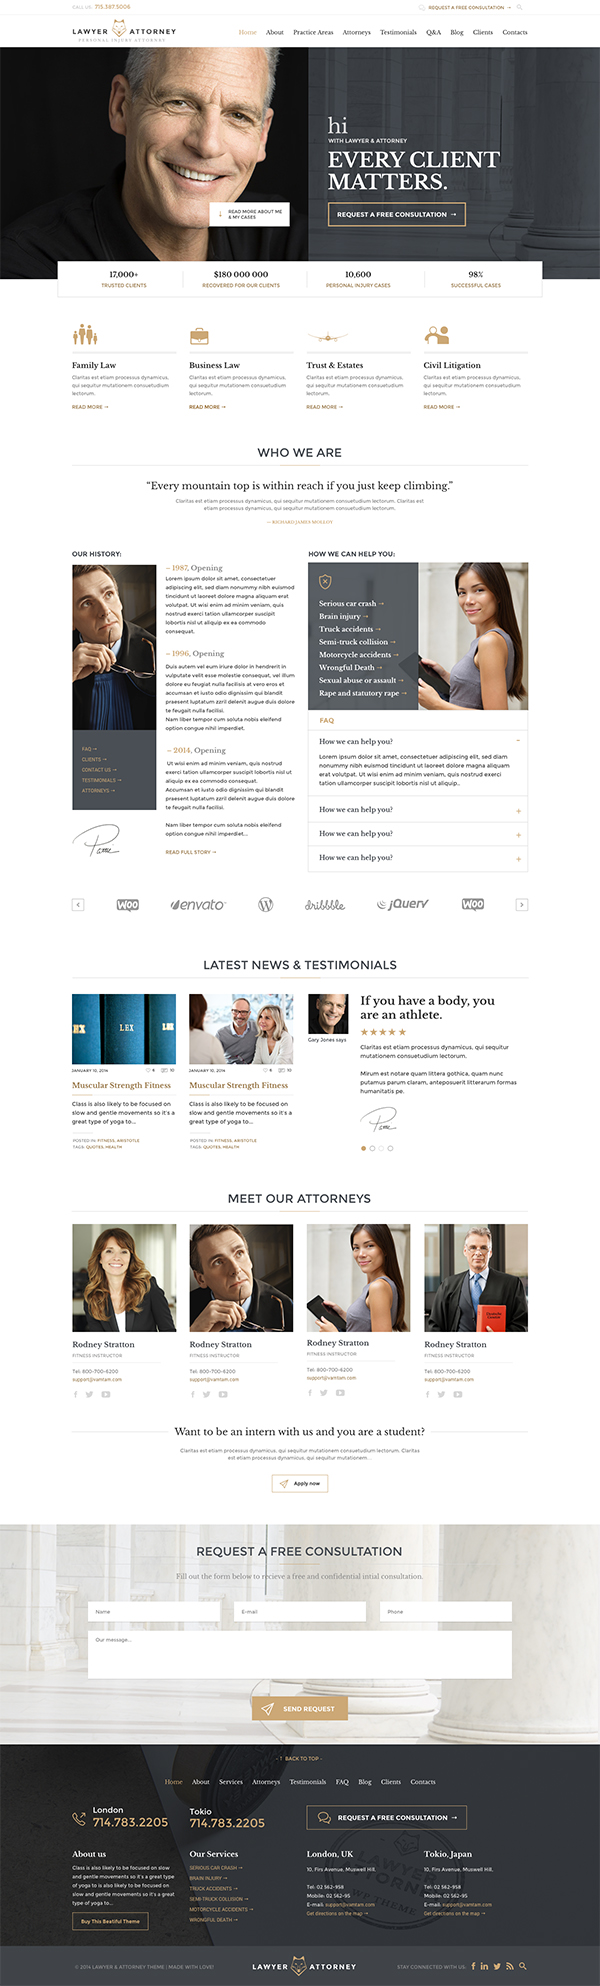 Lawyer & Attorney - Law Firm WordPress